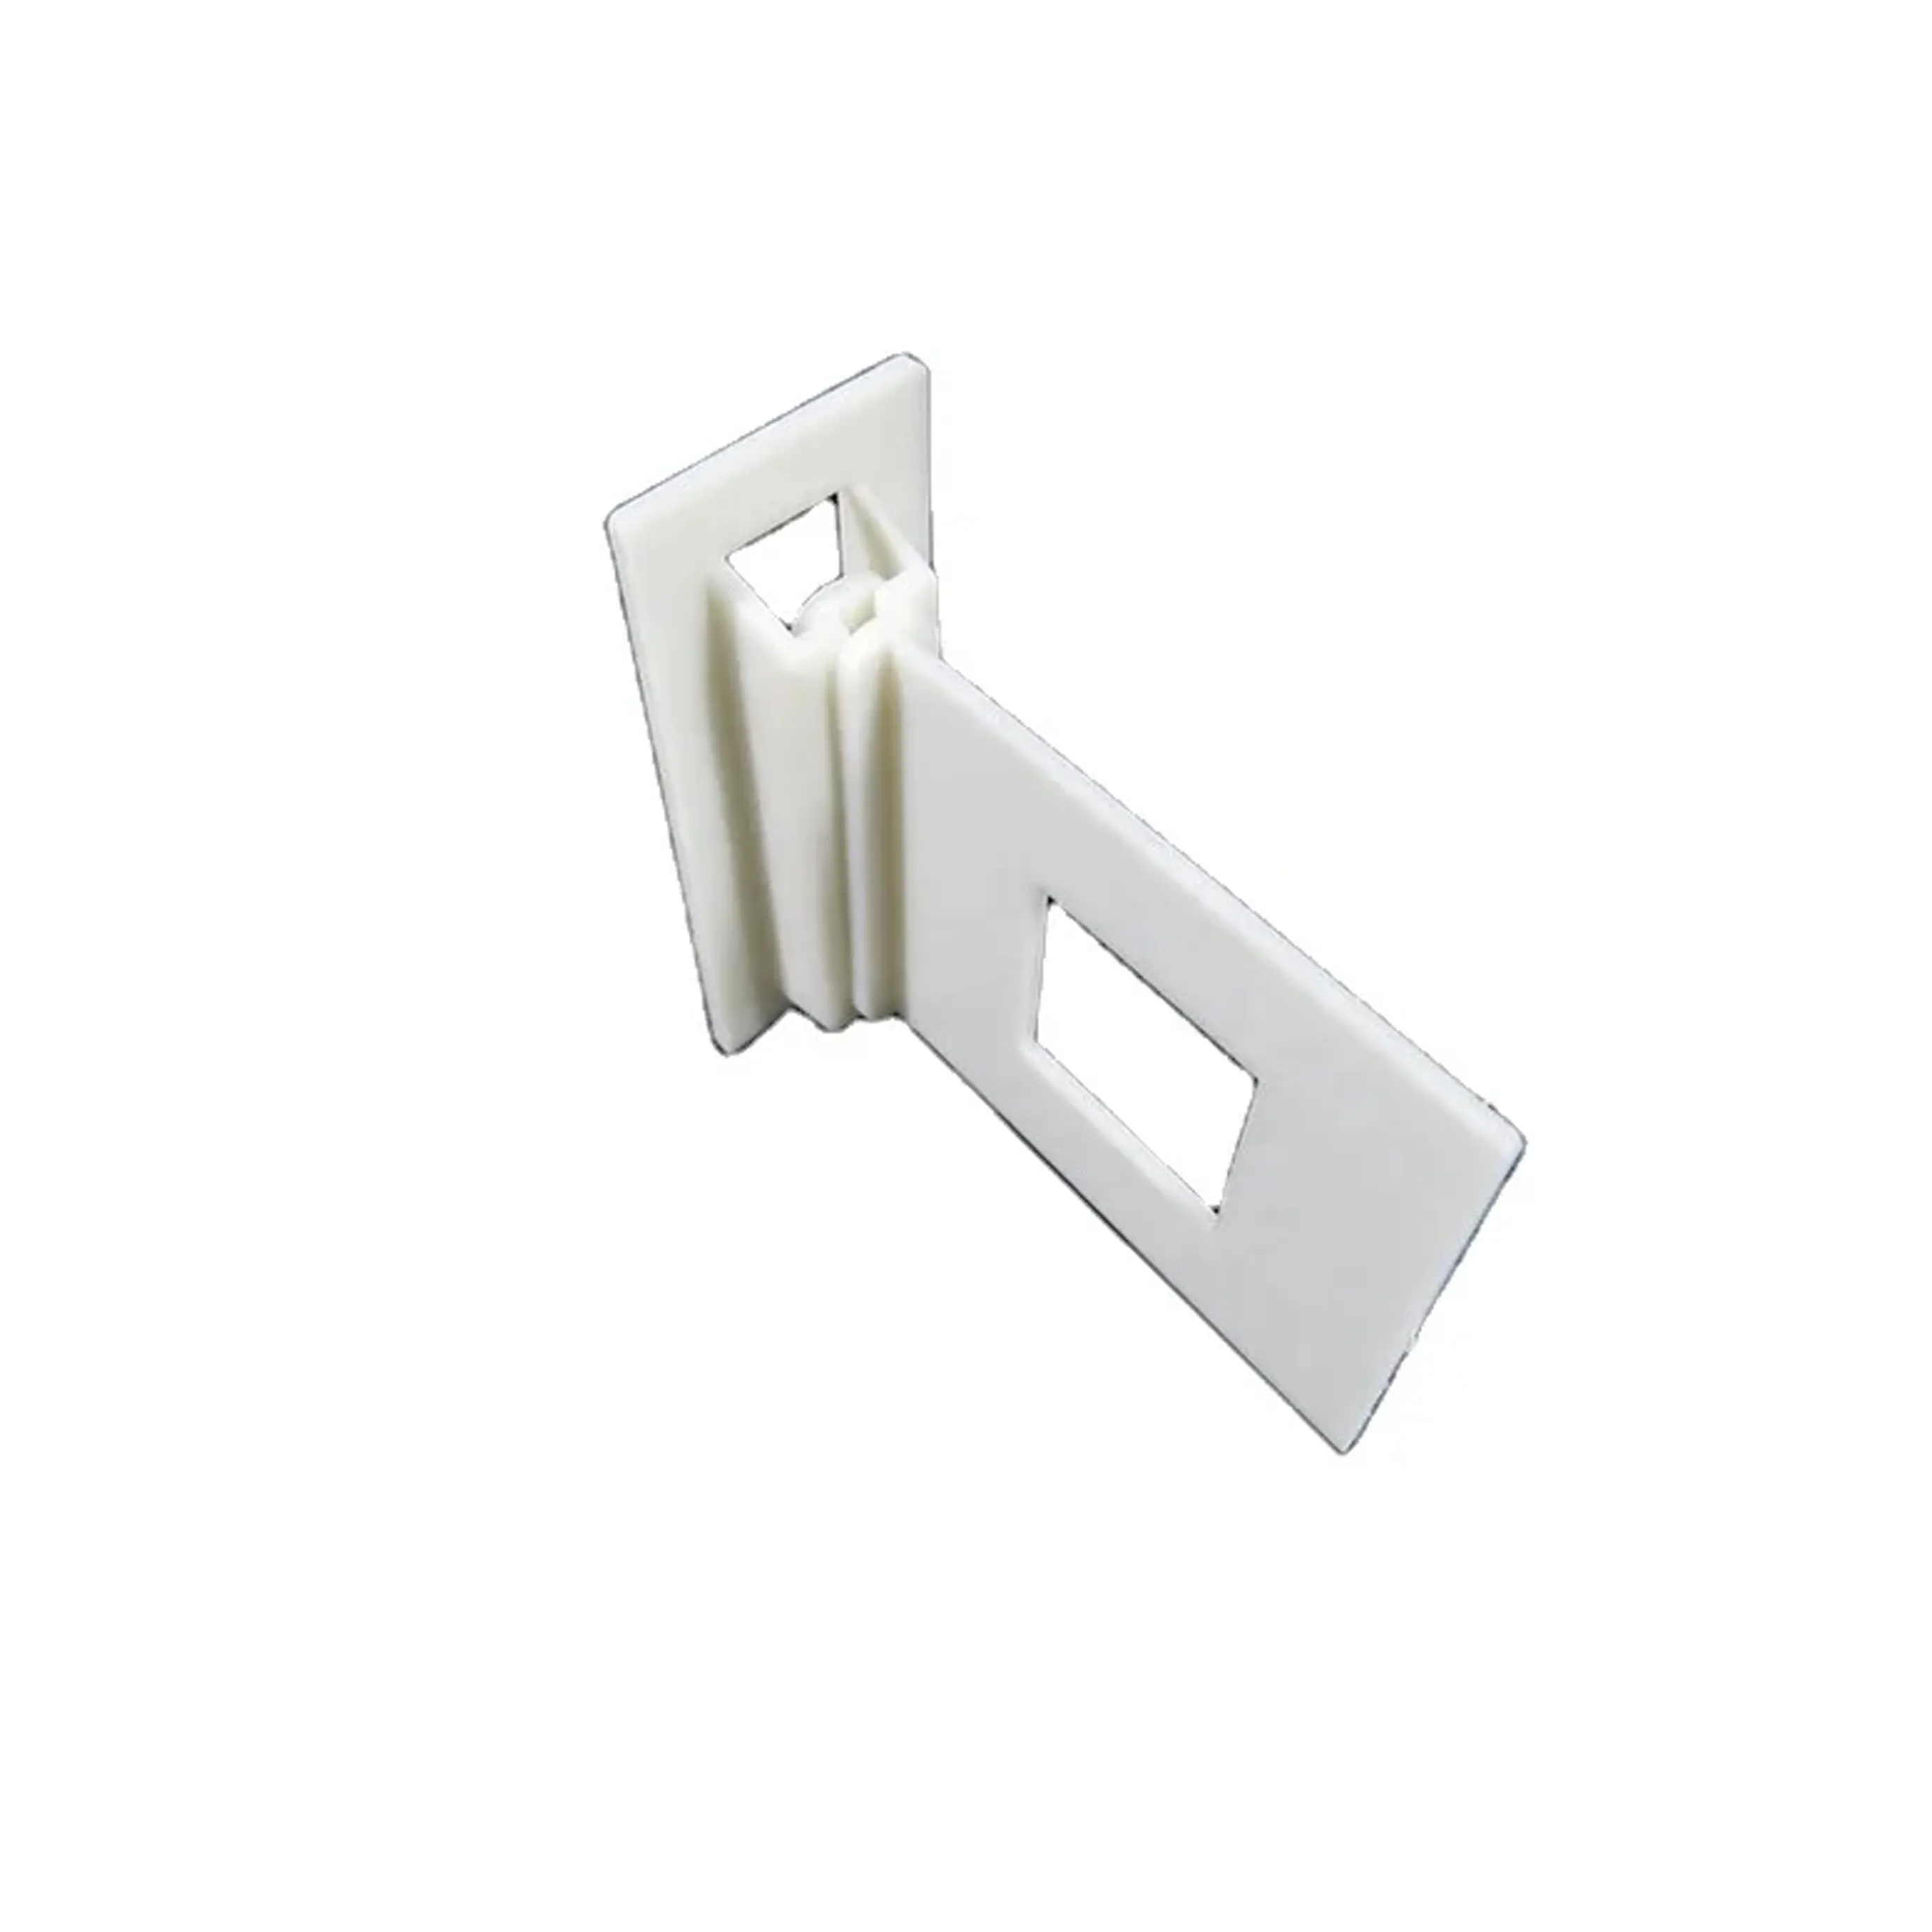 핫 세일 디스플레이 액세서리 전시회 골판지 선반 ABS 커넥터 흰색 플라스틱 골판지 선반 클립